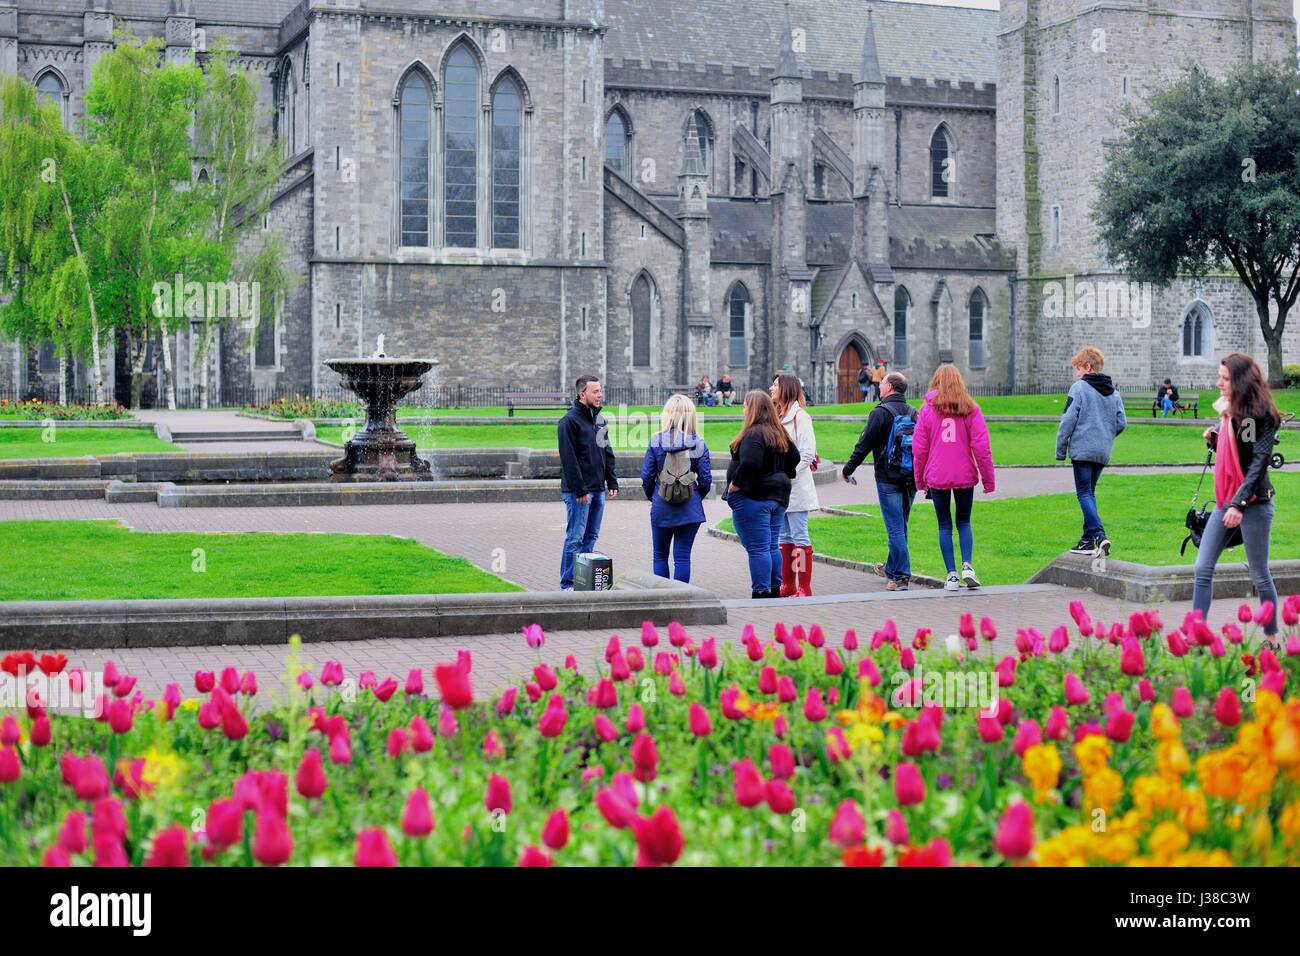 La gente se mezclan e interactúan en un parque en la Catedral de San Patricio en Dublín. La Catedral data de 1254 a 1270. Dublín, Irlanda. Foto de stock